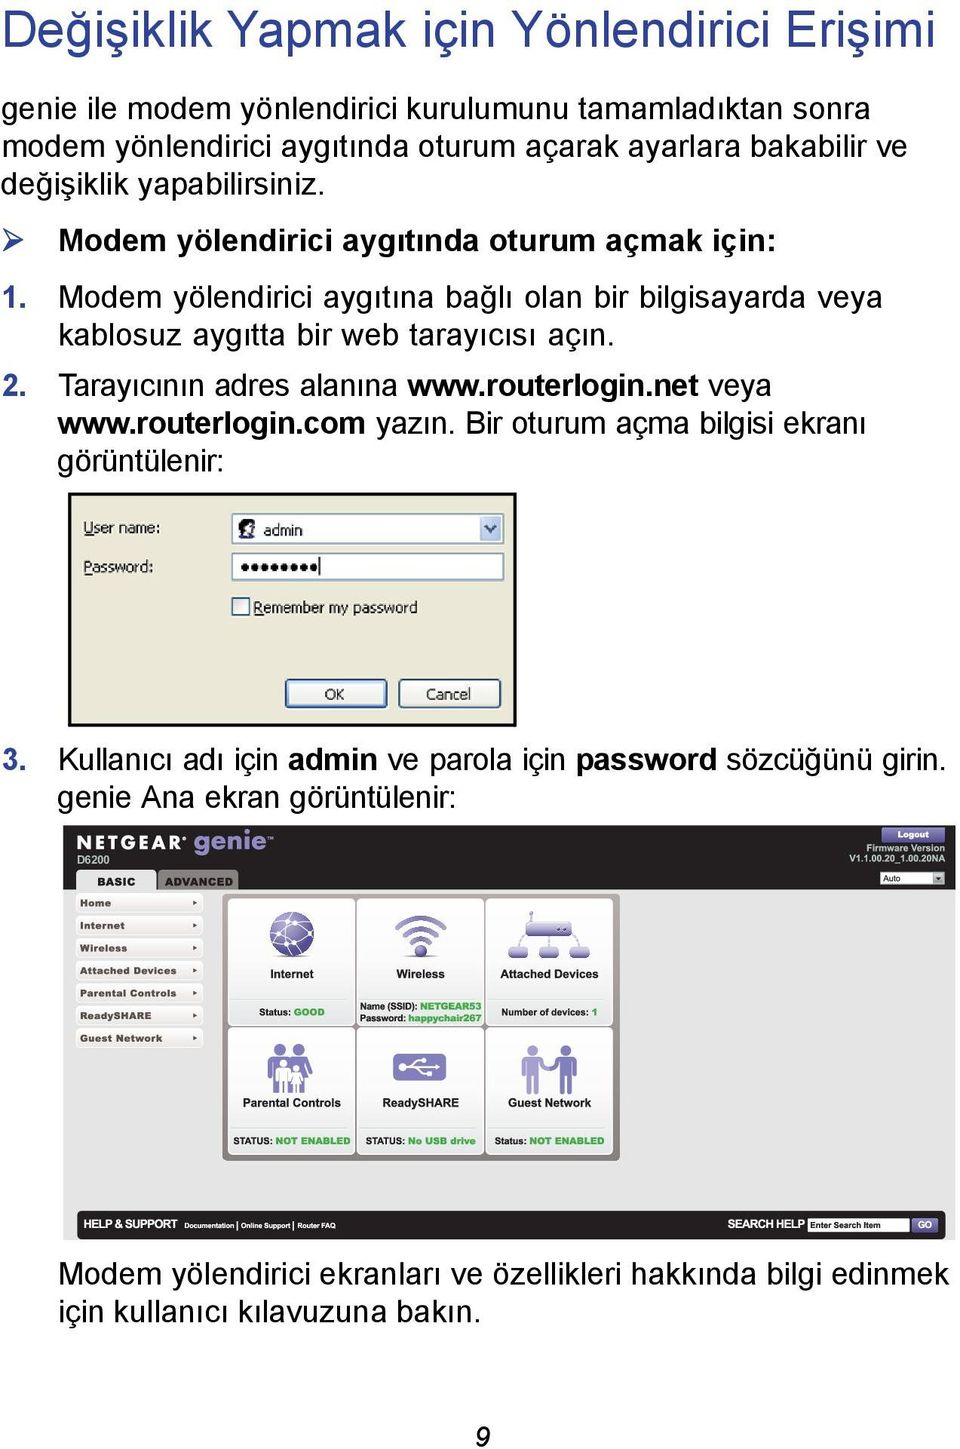 Modem yölendirici aygıtına bağlı olan bir bilgisayarda veya kablosuz aygıtta bir web tarayıcısı açın. 2. Tarayıcının adres alanına www.routerlogin.net veya www.